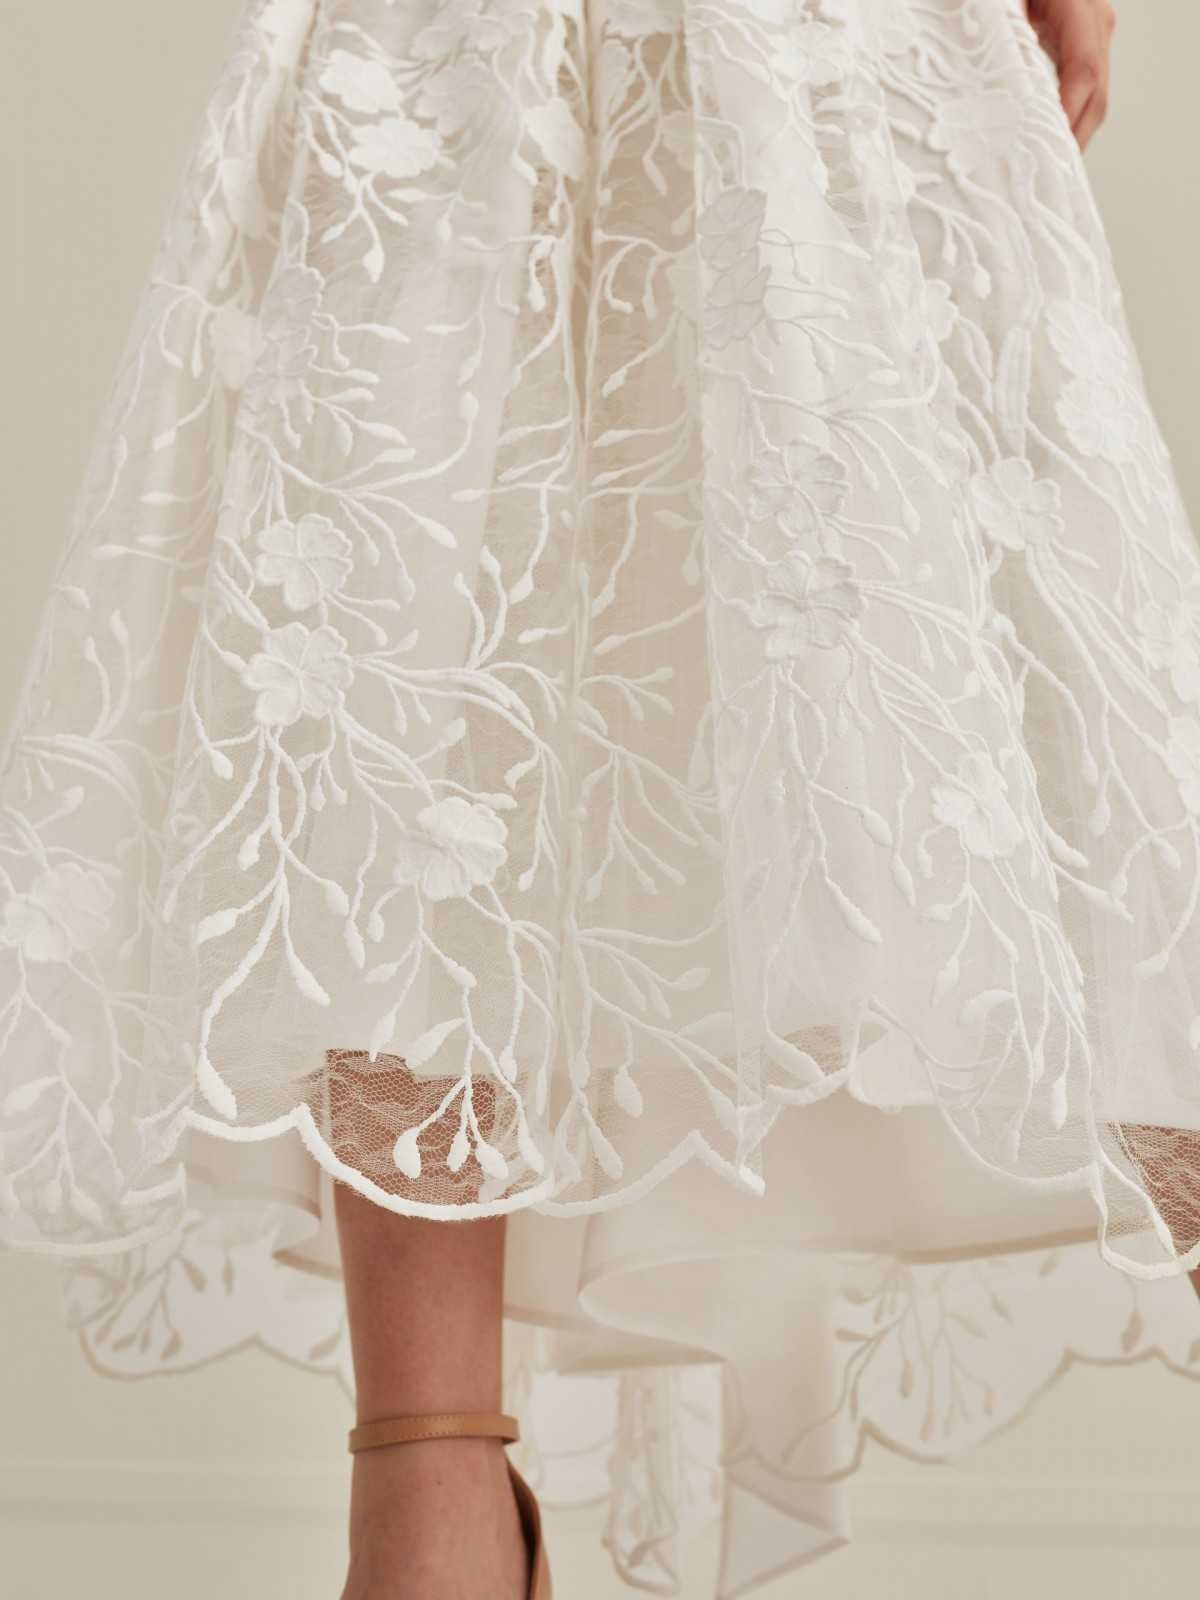 Suknia ślubna TARANKO - gipiura, koronka rozmiar 34, styl romantyczny